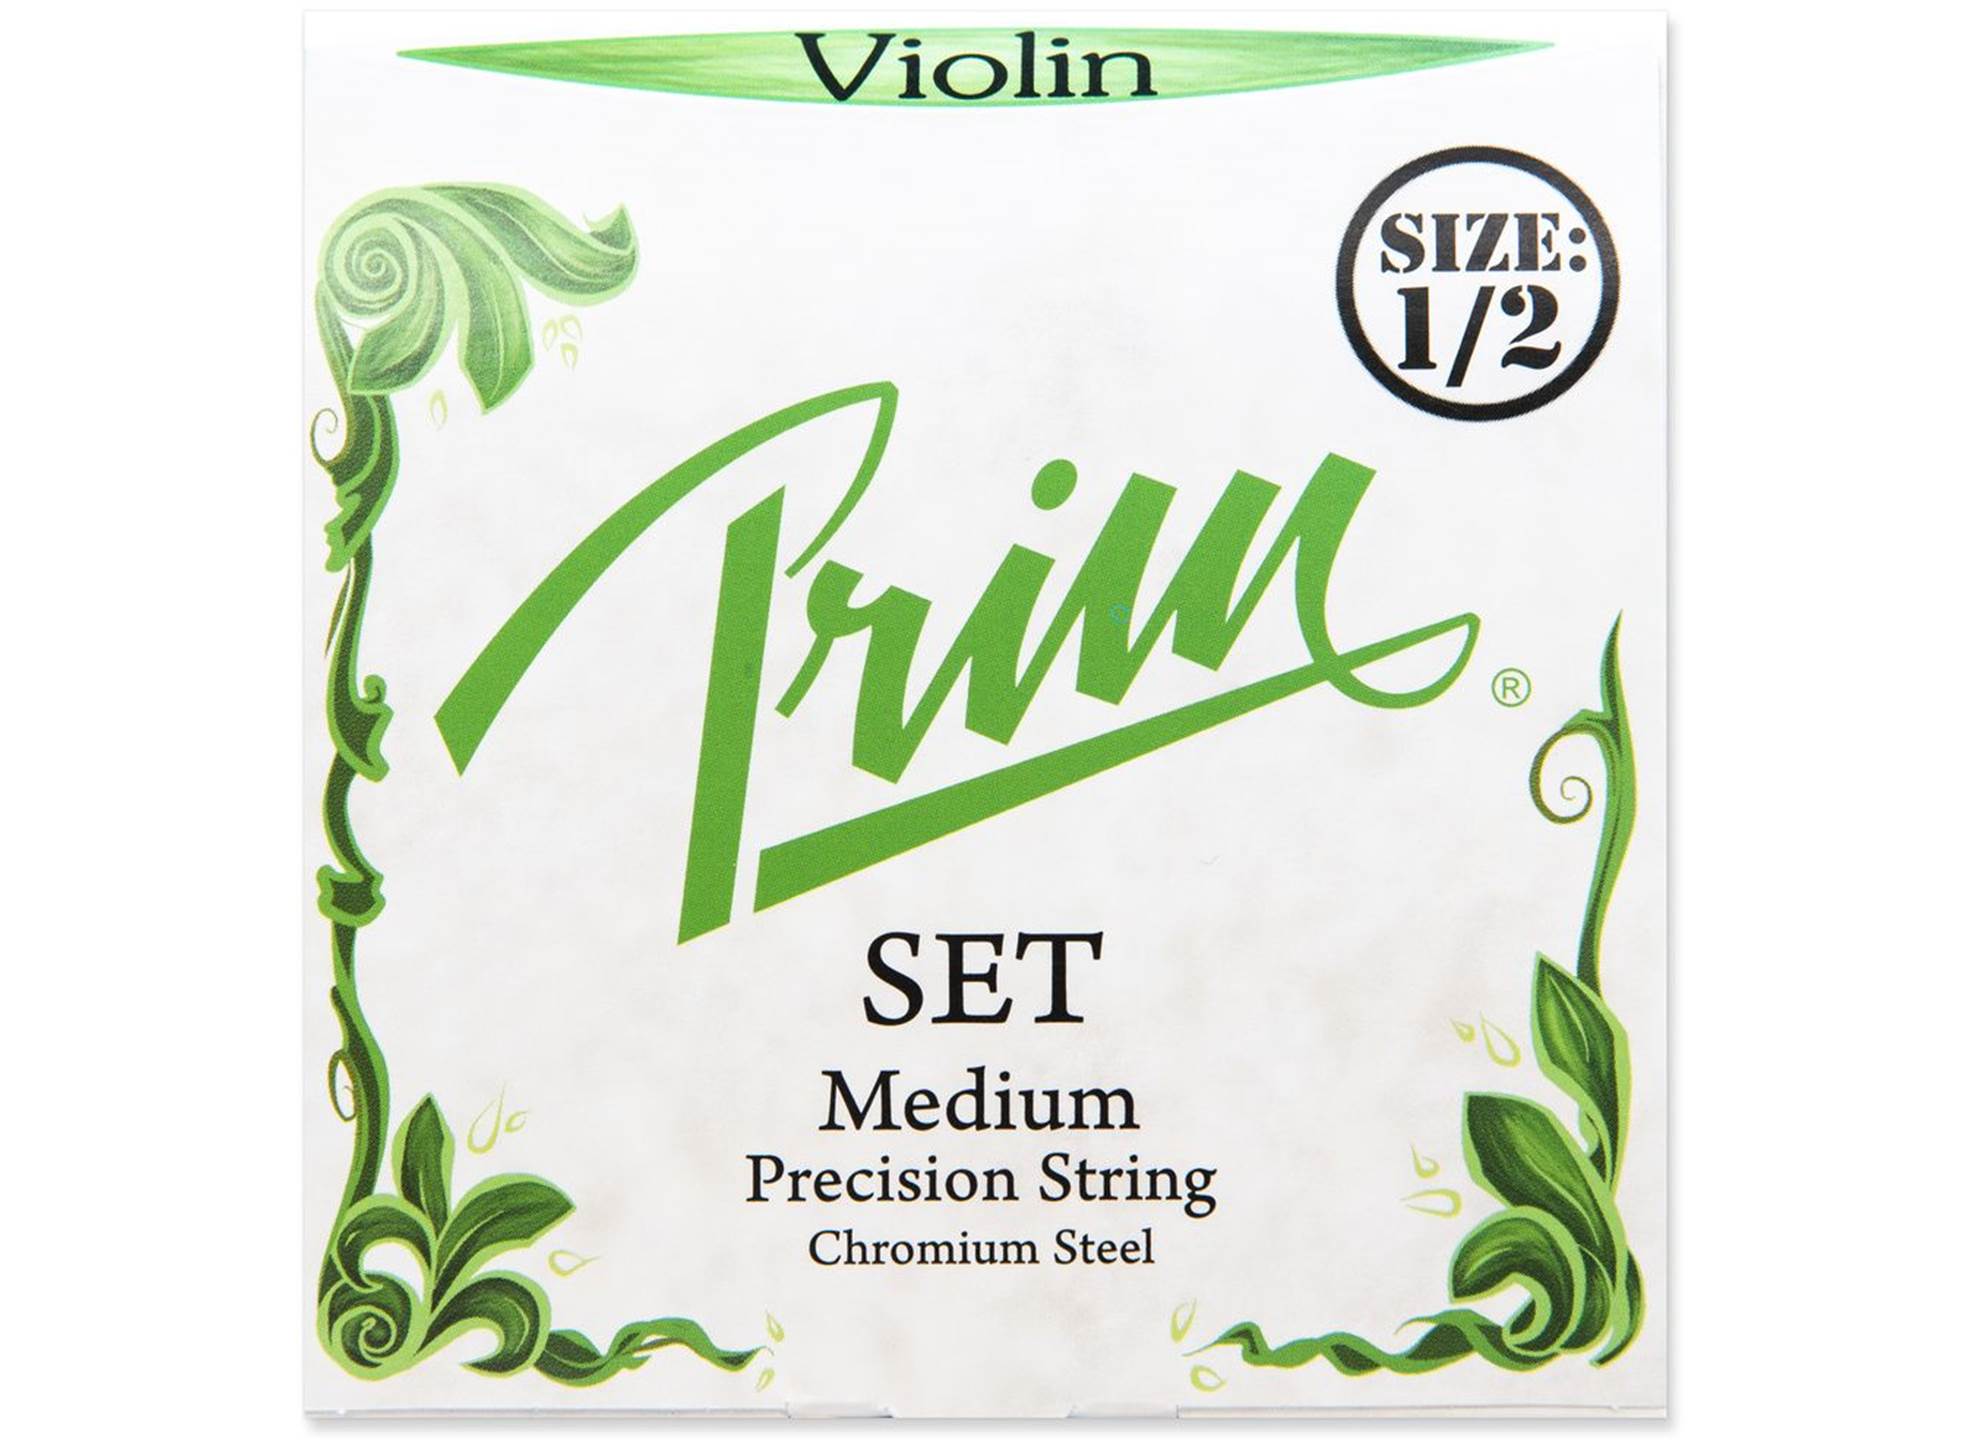 Violin 1/2 Set Medium